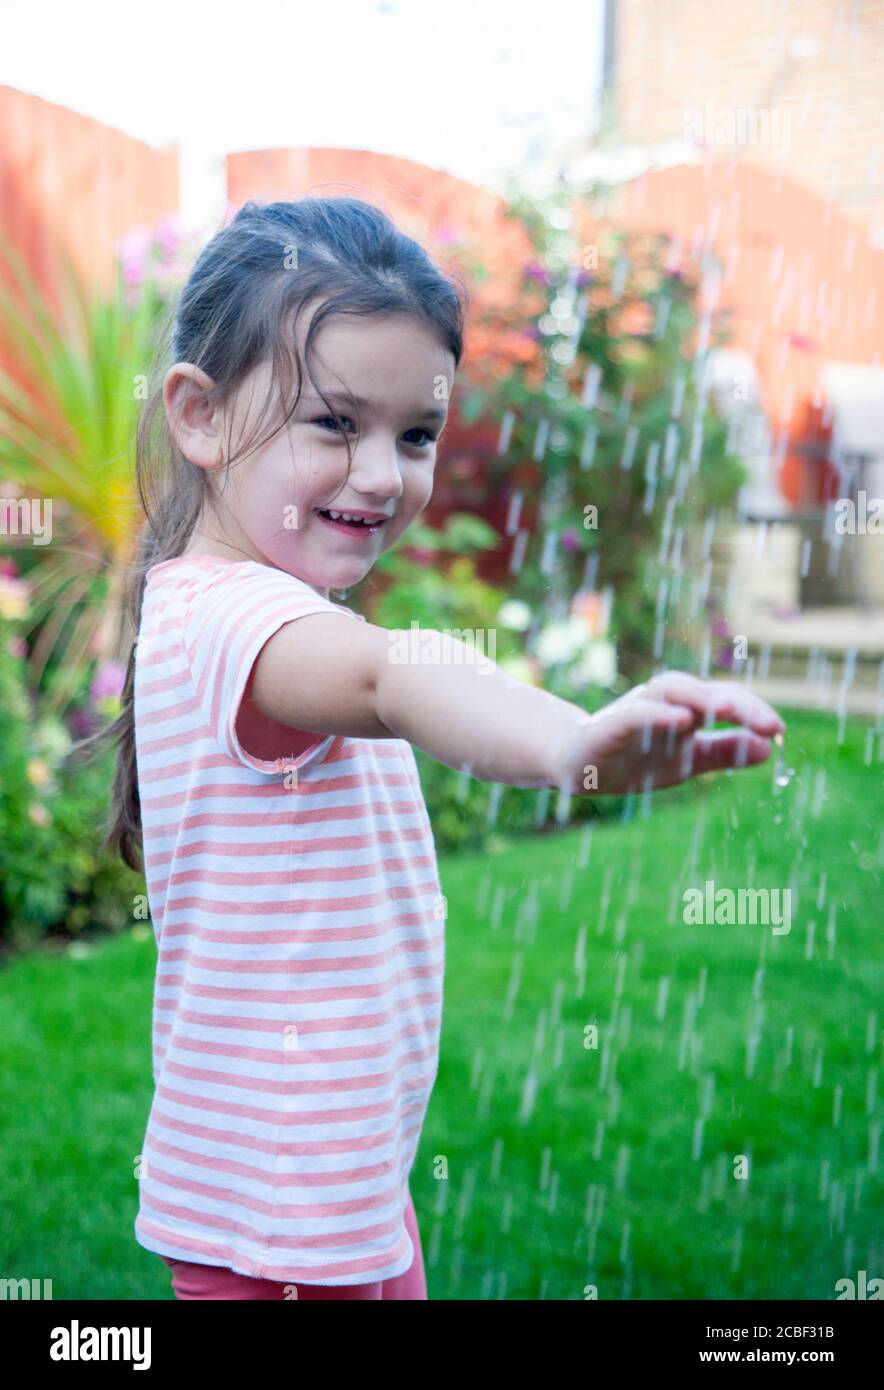 La ragazza di 4 anni, indossando una t-shirt stripea, tiene un braccio sotto le gocce d'acqua in un giardino inglese durante l'estate. Lancashire, Inghilterra, Regno Unito Foto Stock